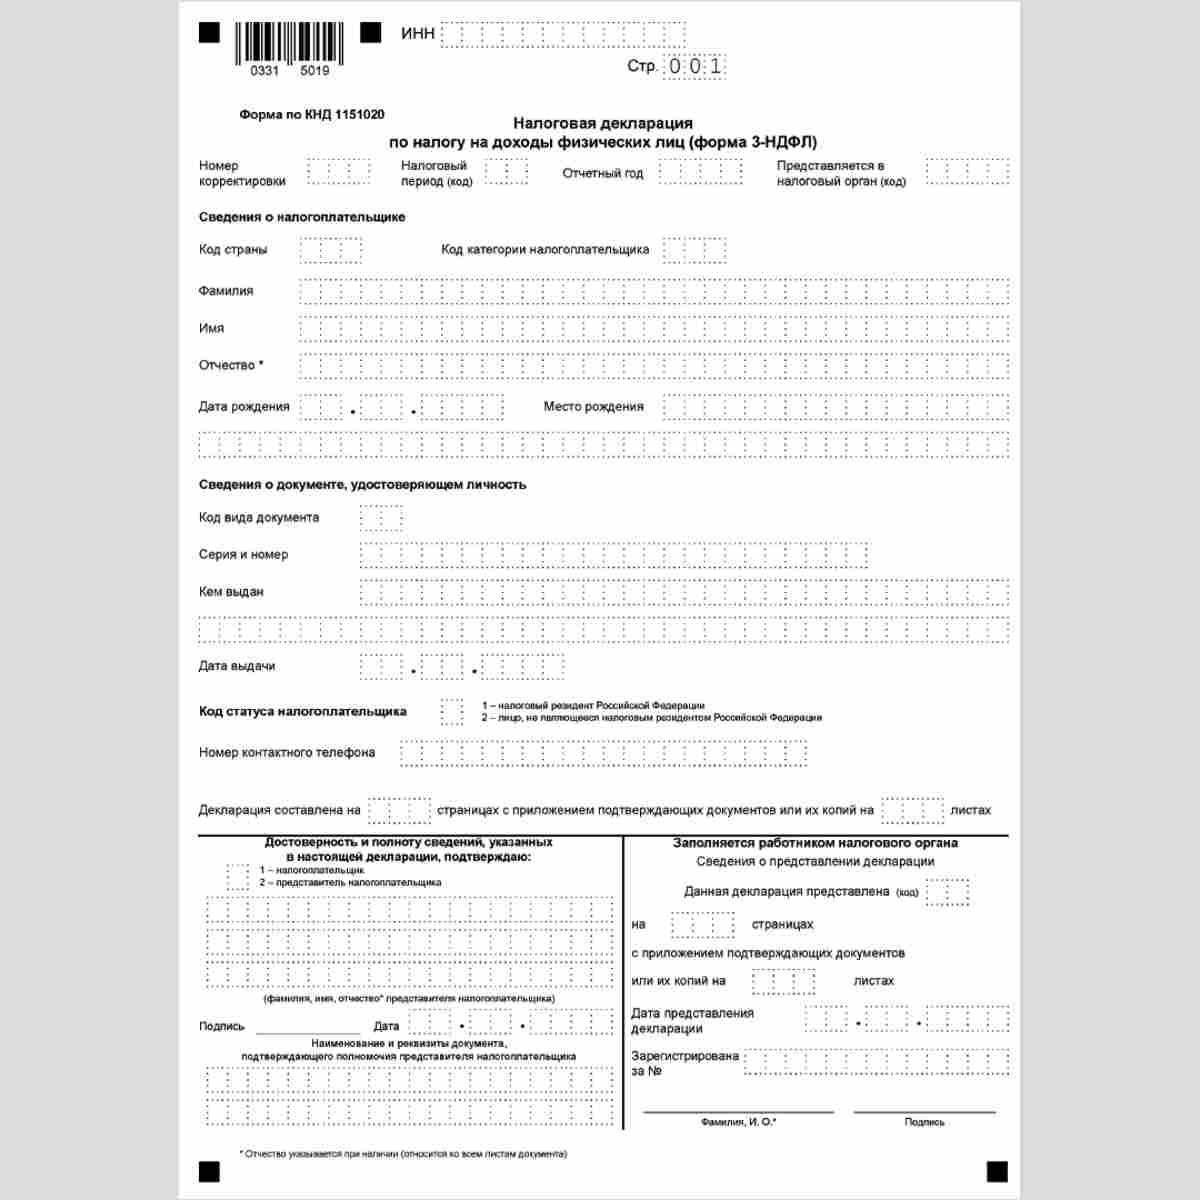 Форма КНД 1151020 "Налоговая декларация по налогу на доходы физических лиц" (форма 3-НДФЛ). Титульный лист.